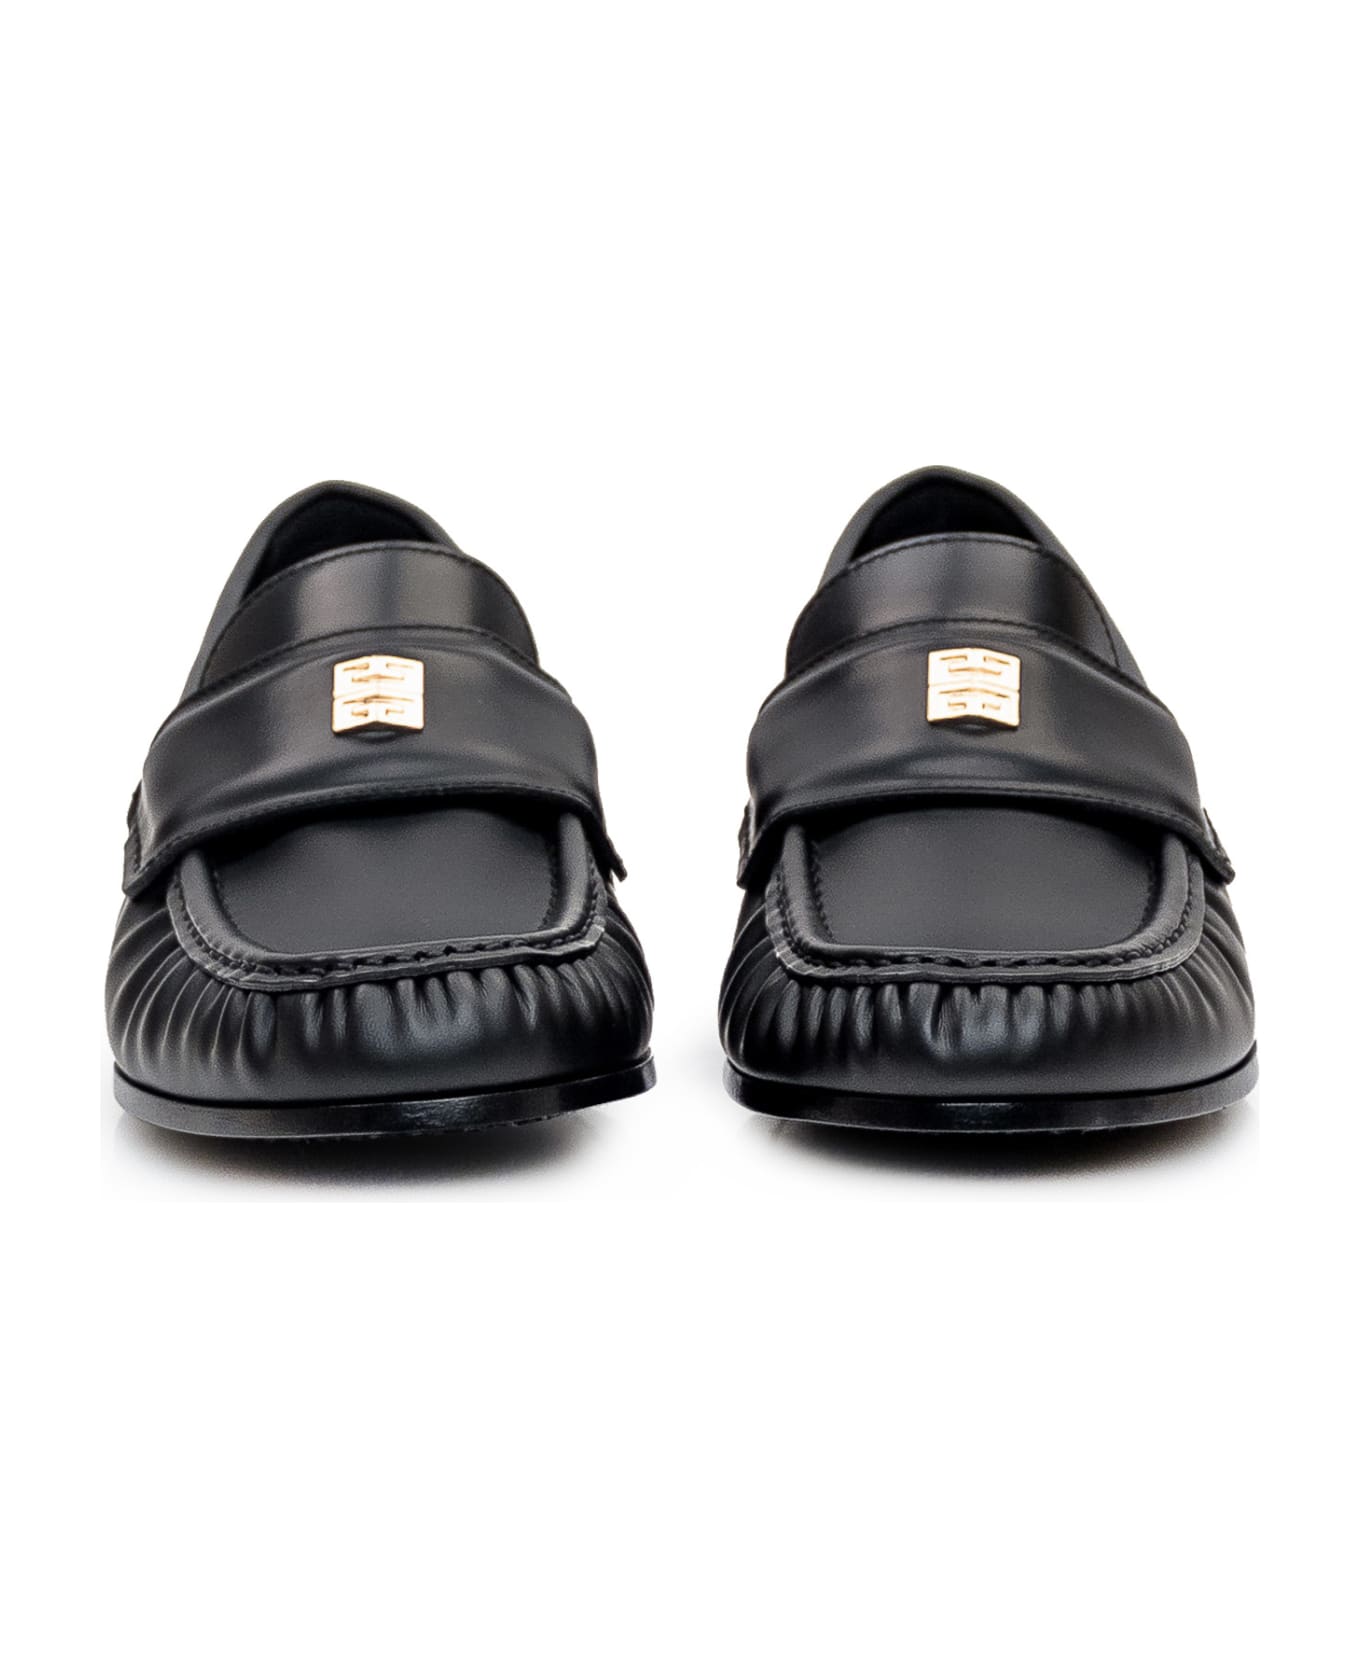 Givenchy '4g' Loafer - BLACK